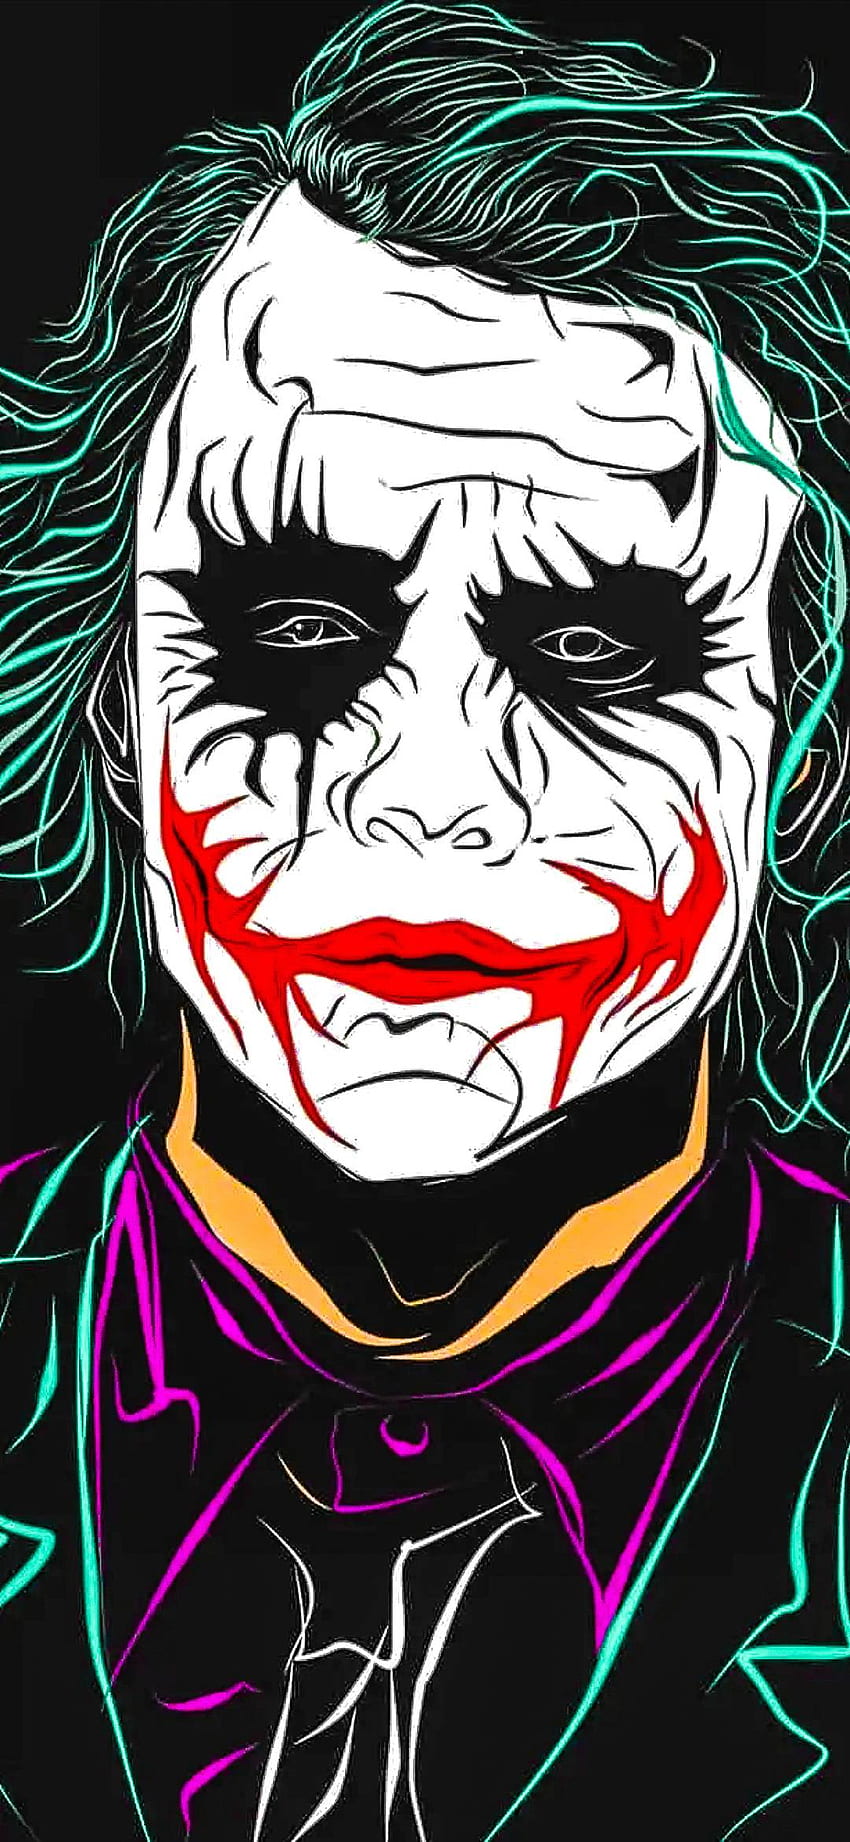 Joker 2019 - Background 70, Joker Portrait HD phone wallpaper | Pxfuel